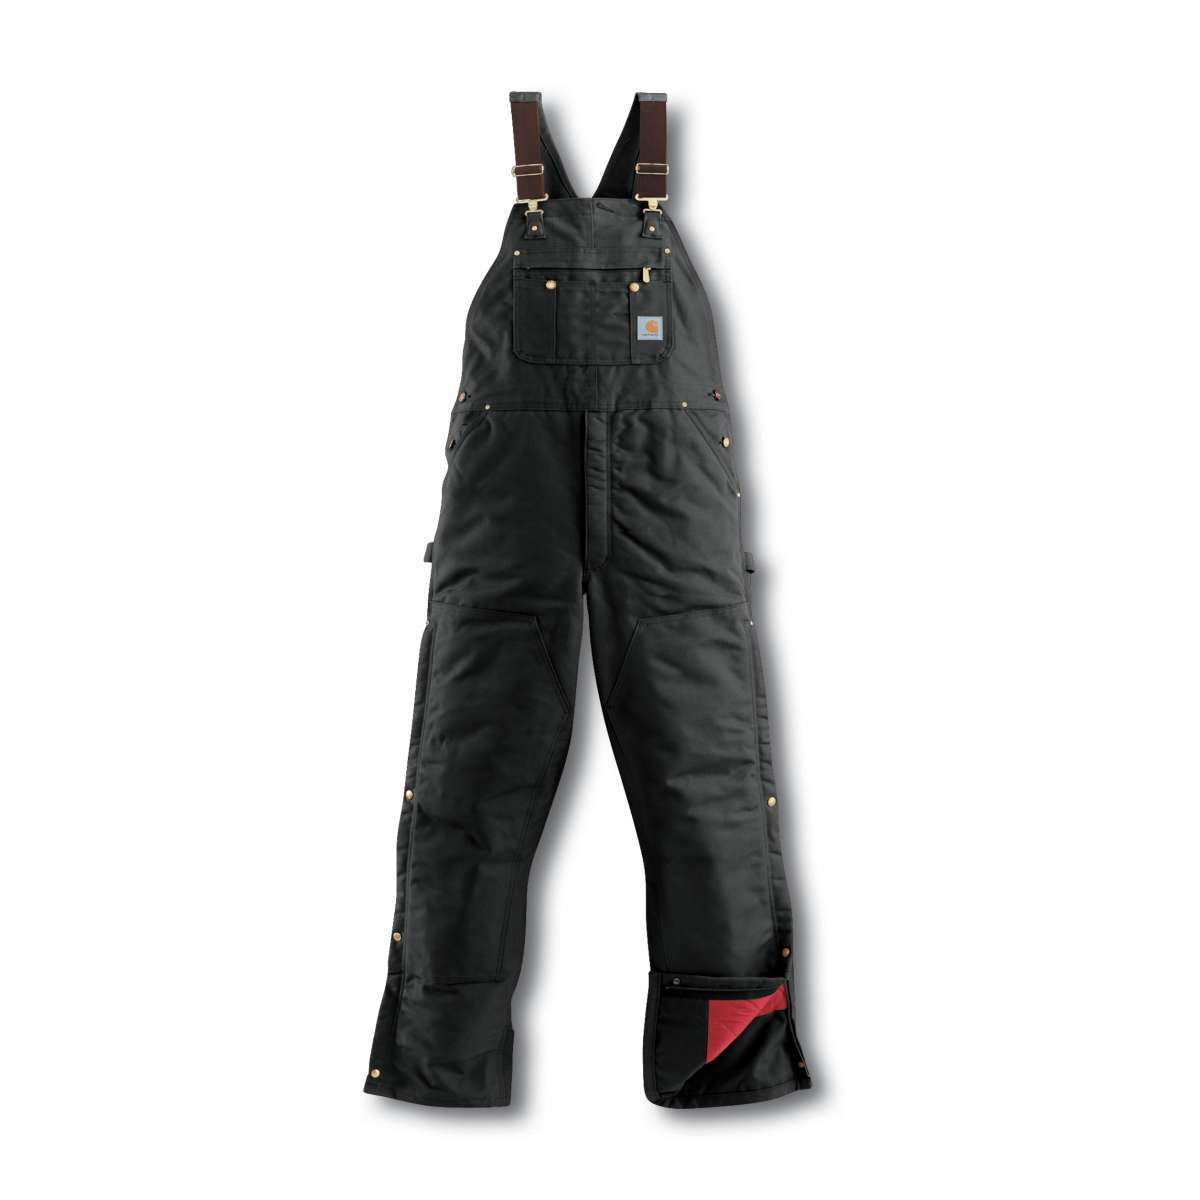 Carhartt Men's Duck Quilt-Lined Zip-To-Thigh Bib Overalls - Black, 40/30